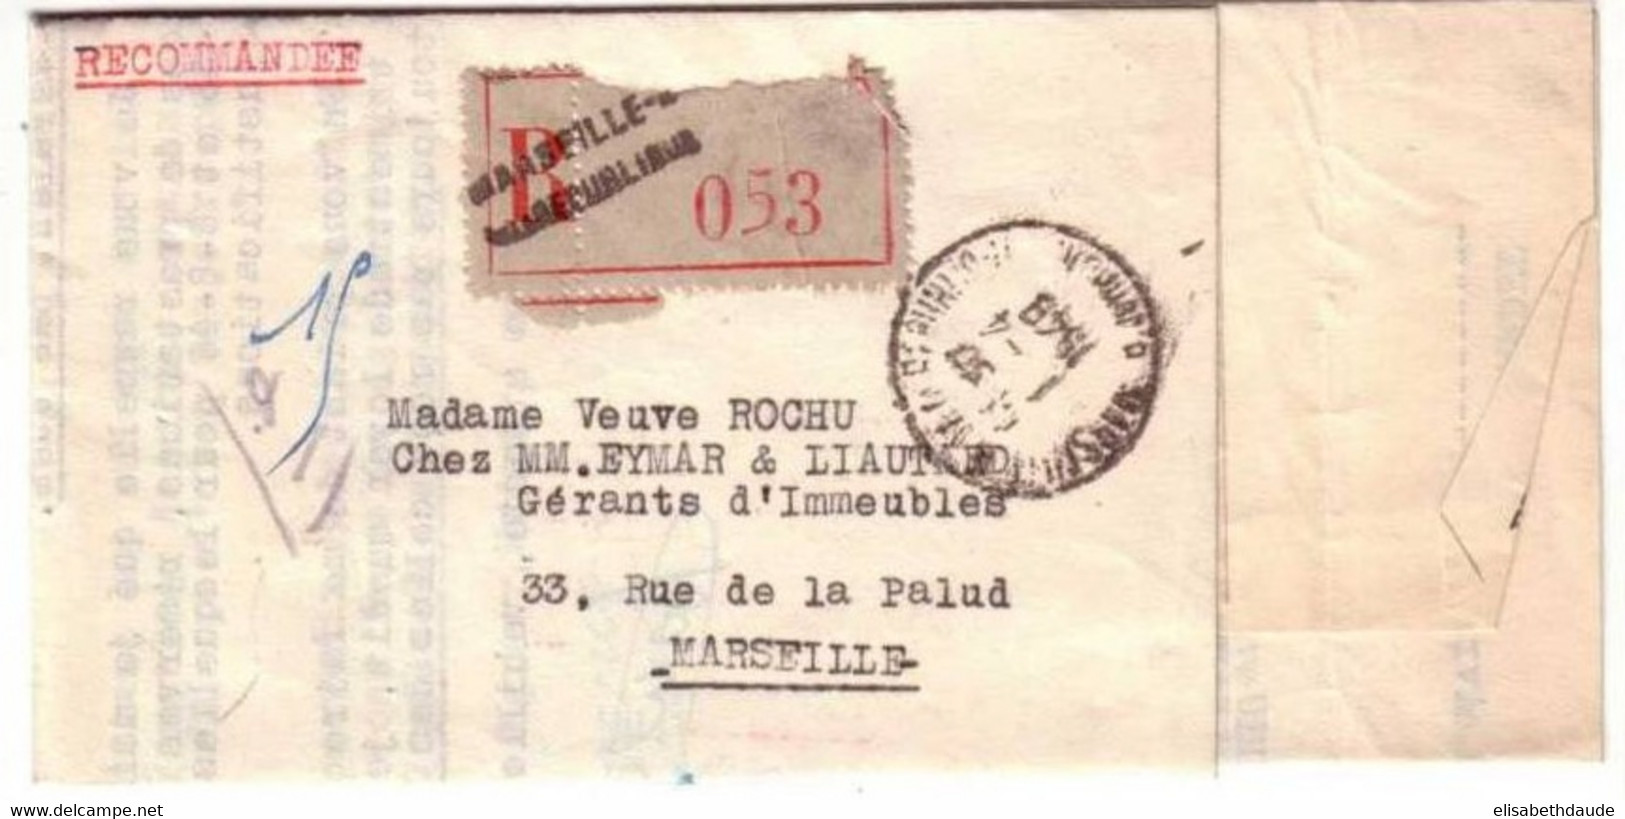 GANDON  -Yvert N°719B X 4  Sur LETTRE RECOMMANDEE De MARSEILLE REPUBLIQUE (BDR) -1948 - 1945-54 Marianne Of Gandon